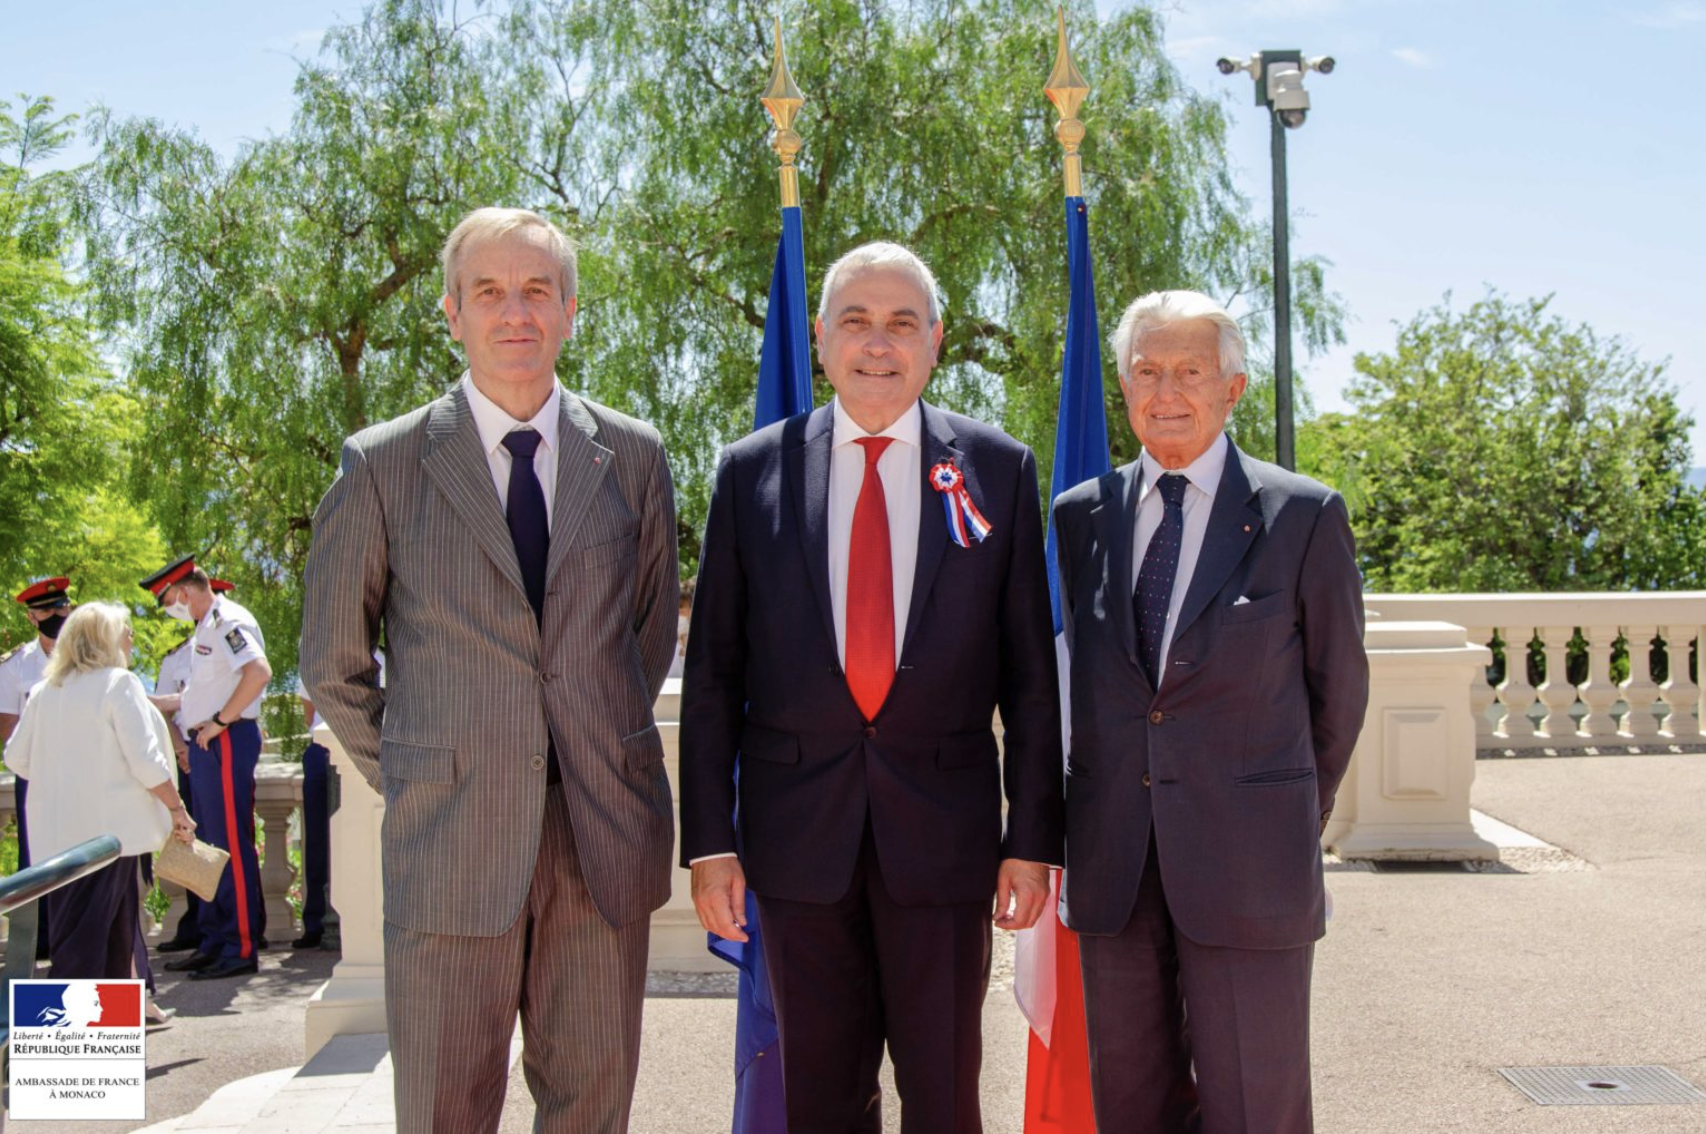 July 14th 2021, H.E. Ambassador Umberto Di Capua was invited to attend Fête nationale de la République française.